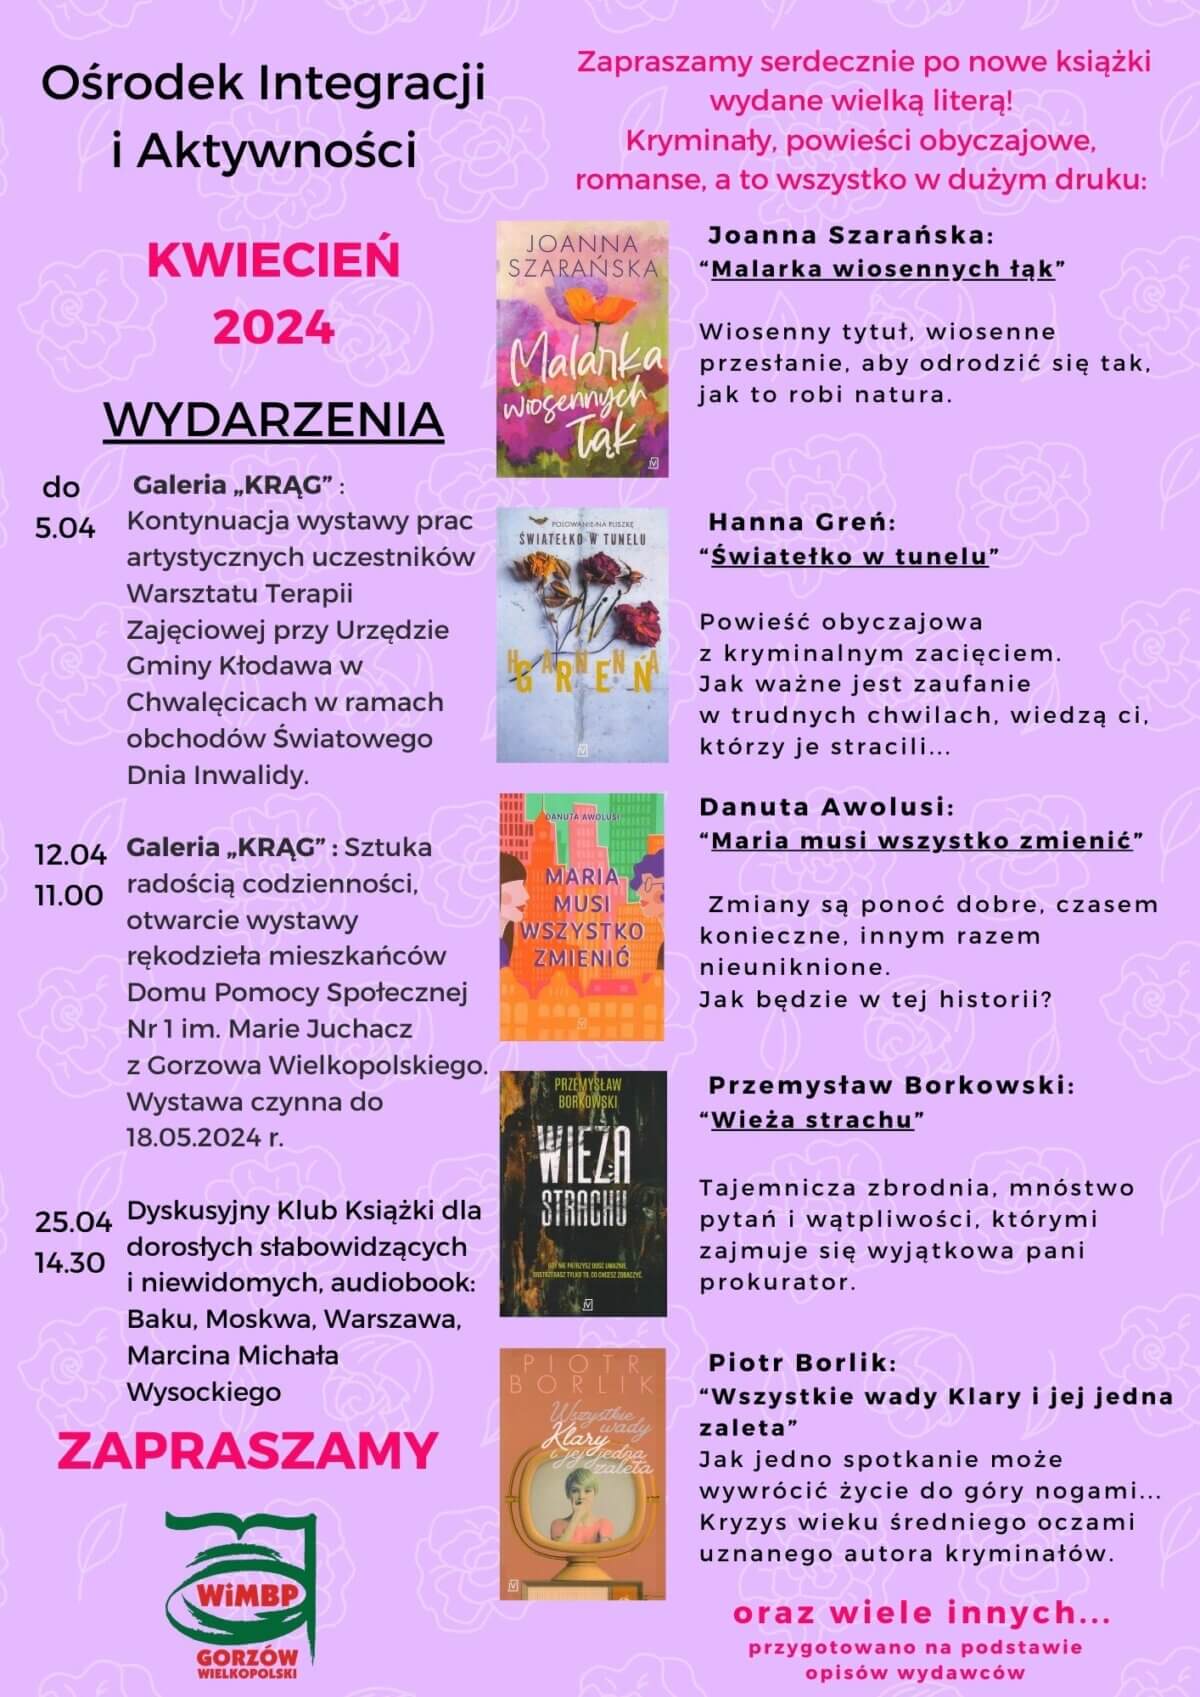 Plakat promujący działalność Ośrodka, w kolorystyce fioletowej, z okładkami promowanych książek i spisem wydarzeń w kwietniu organizowanych przez Ośrodek.